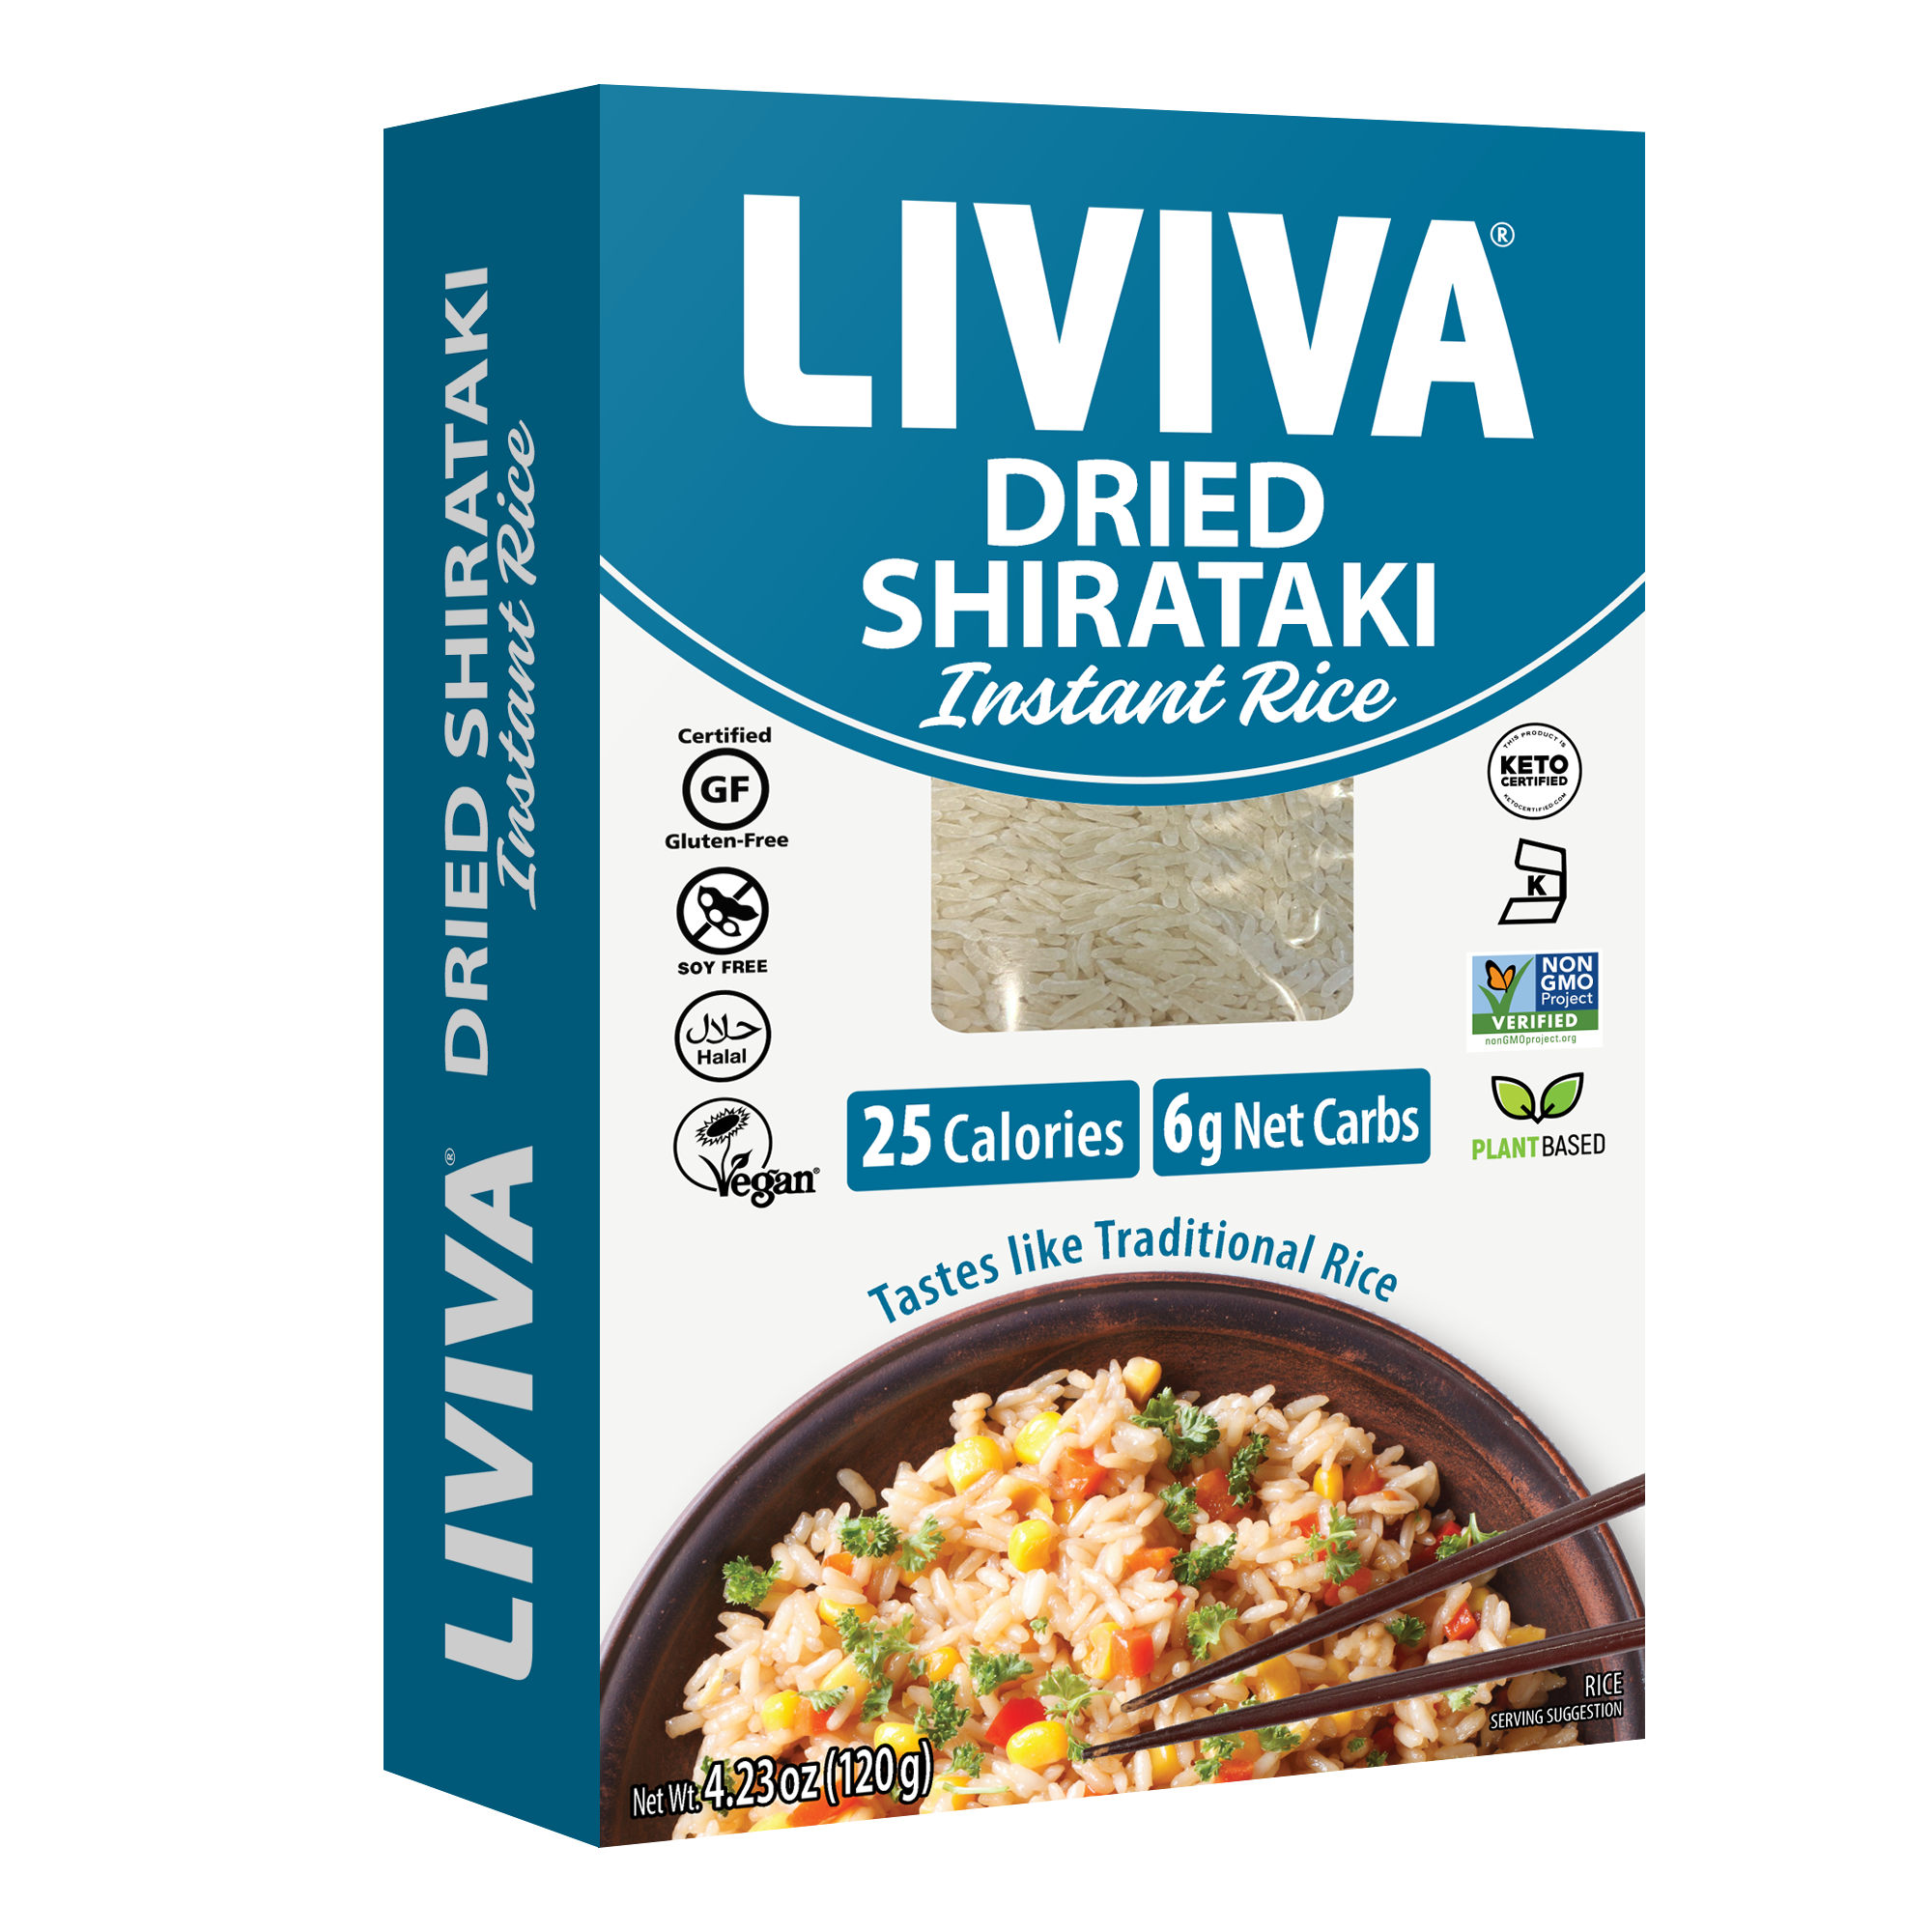 Dried Shirataki Instant Rice (Case of 6)